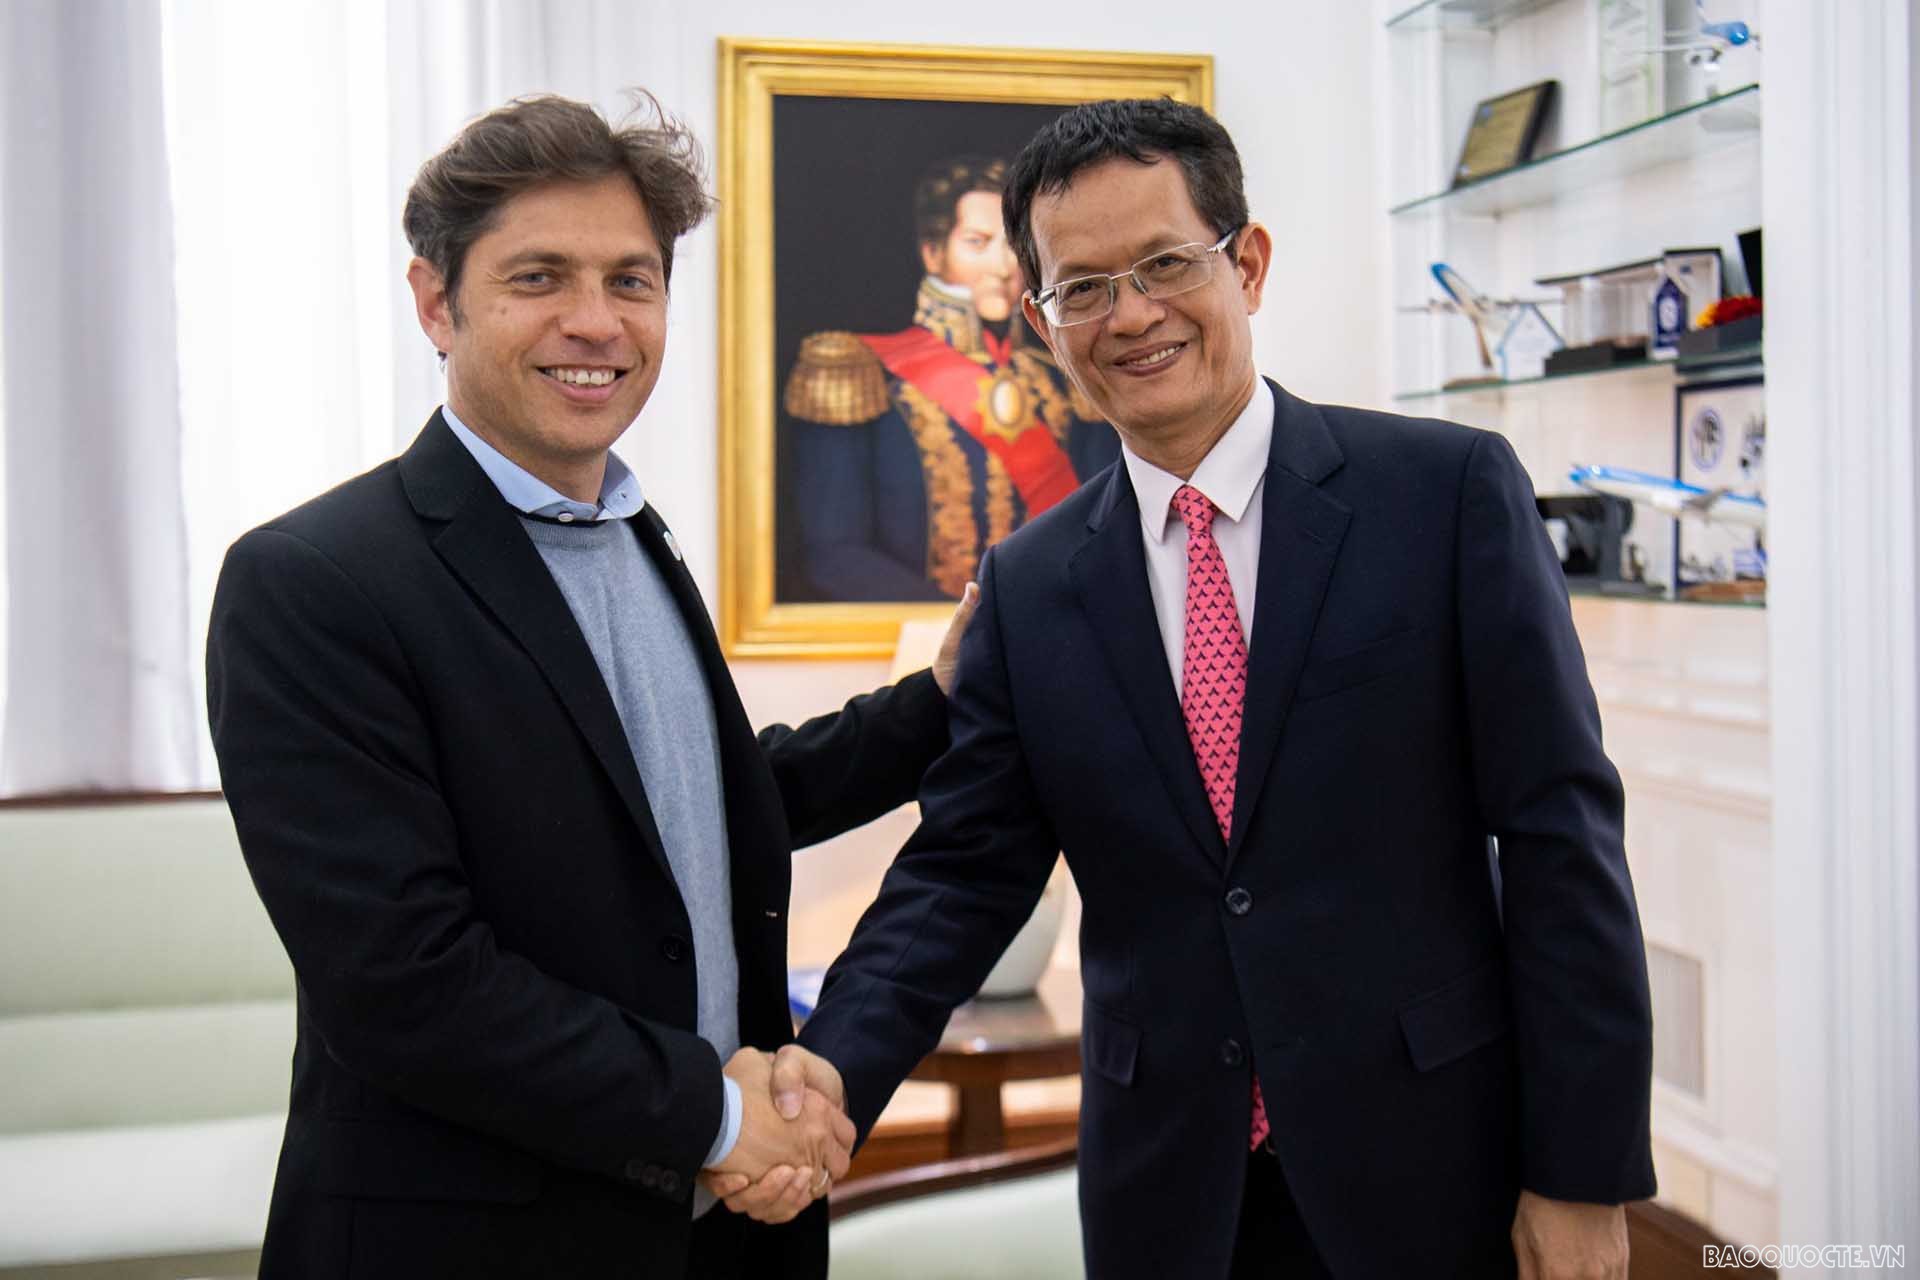 Đại sứ Dương Quốc Thanh và Thống đốc tỉnh Buenos Aires Axel Kicillof.